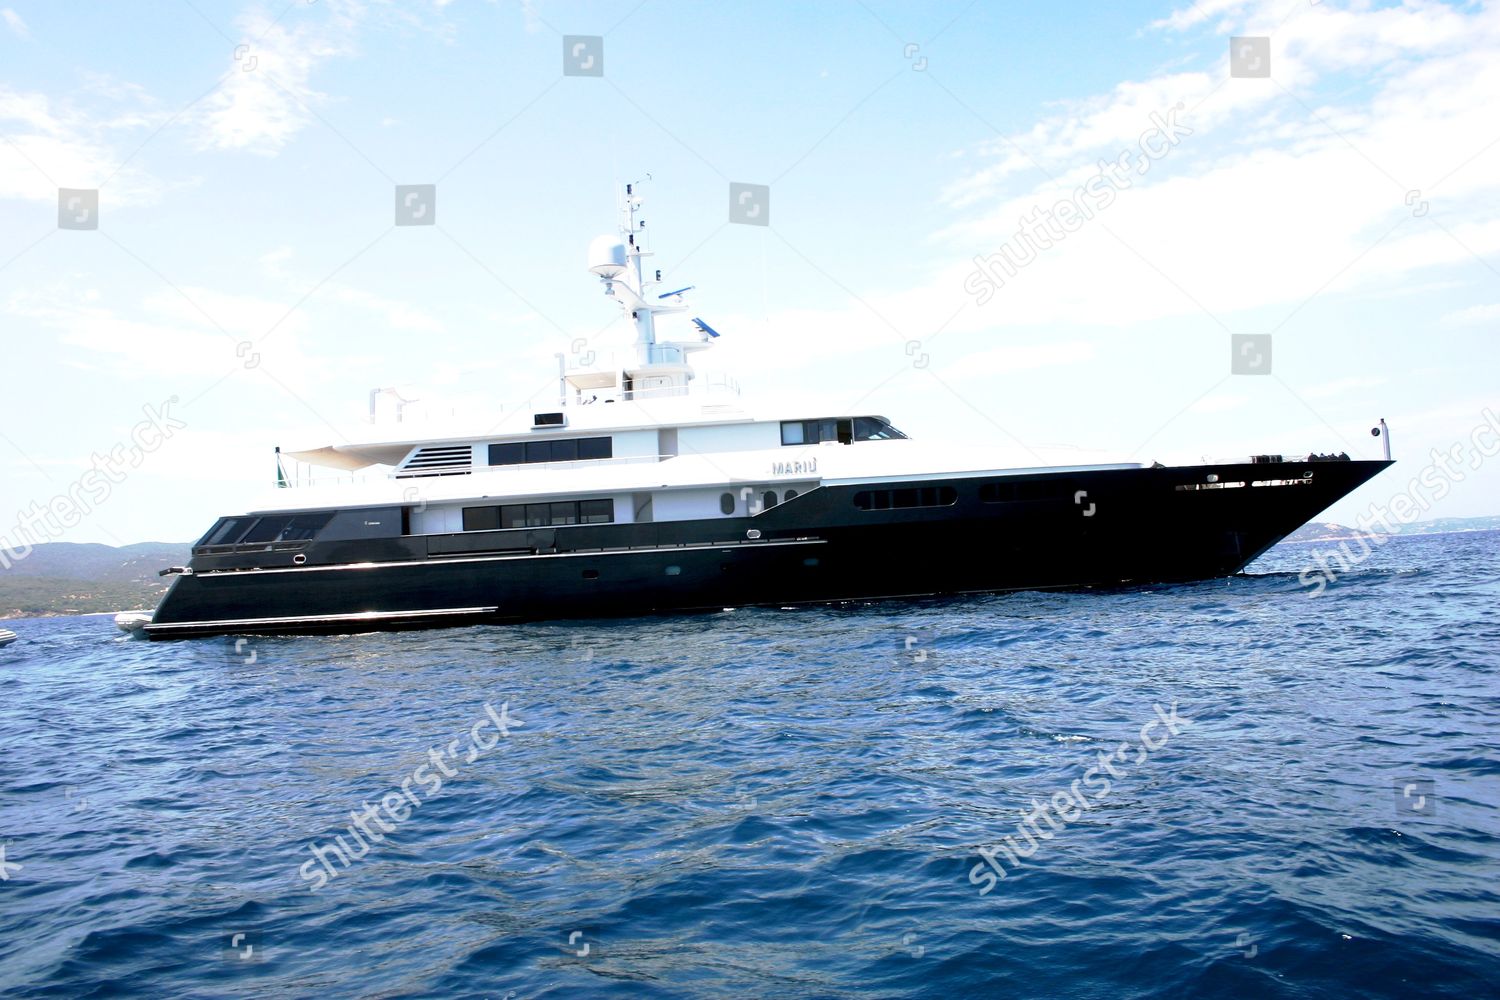 armani yacht main